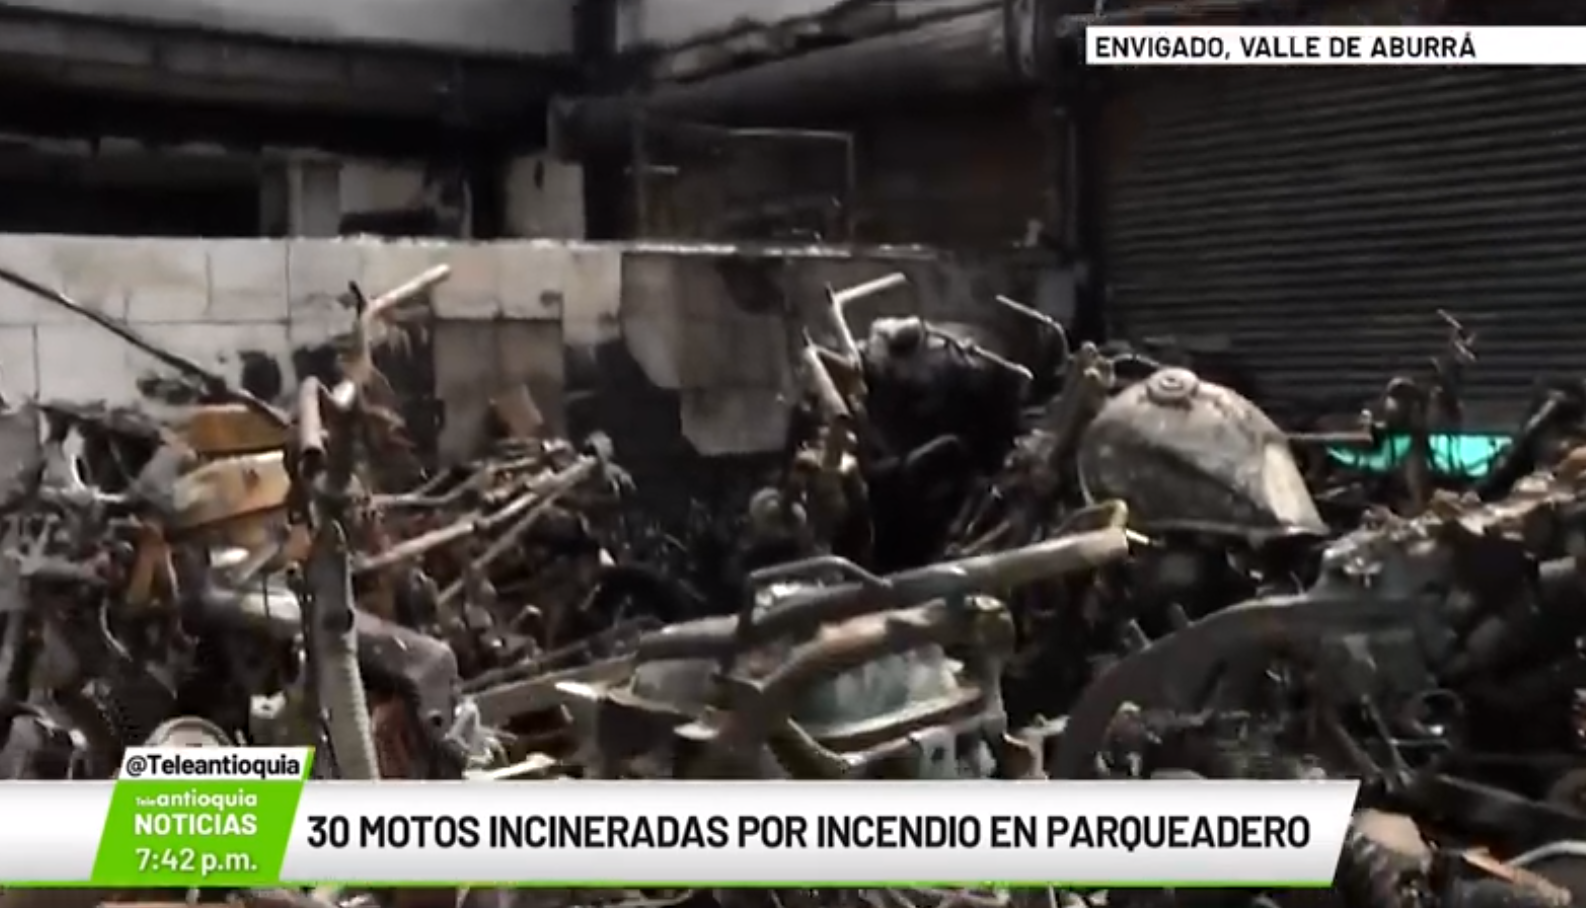 30 motos incineradas por incendio en parqueadero